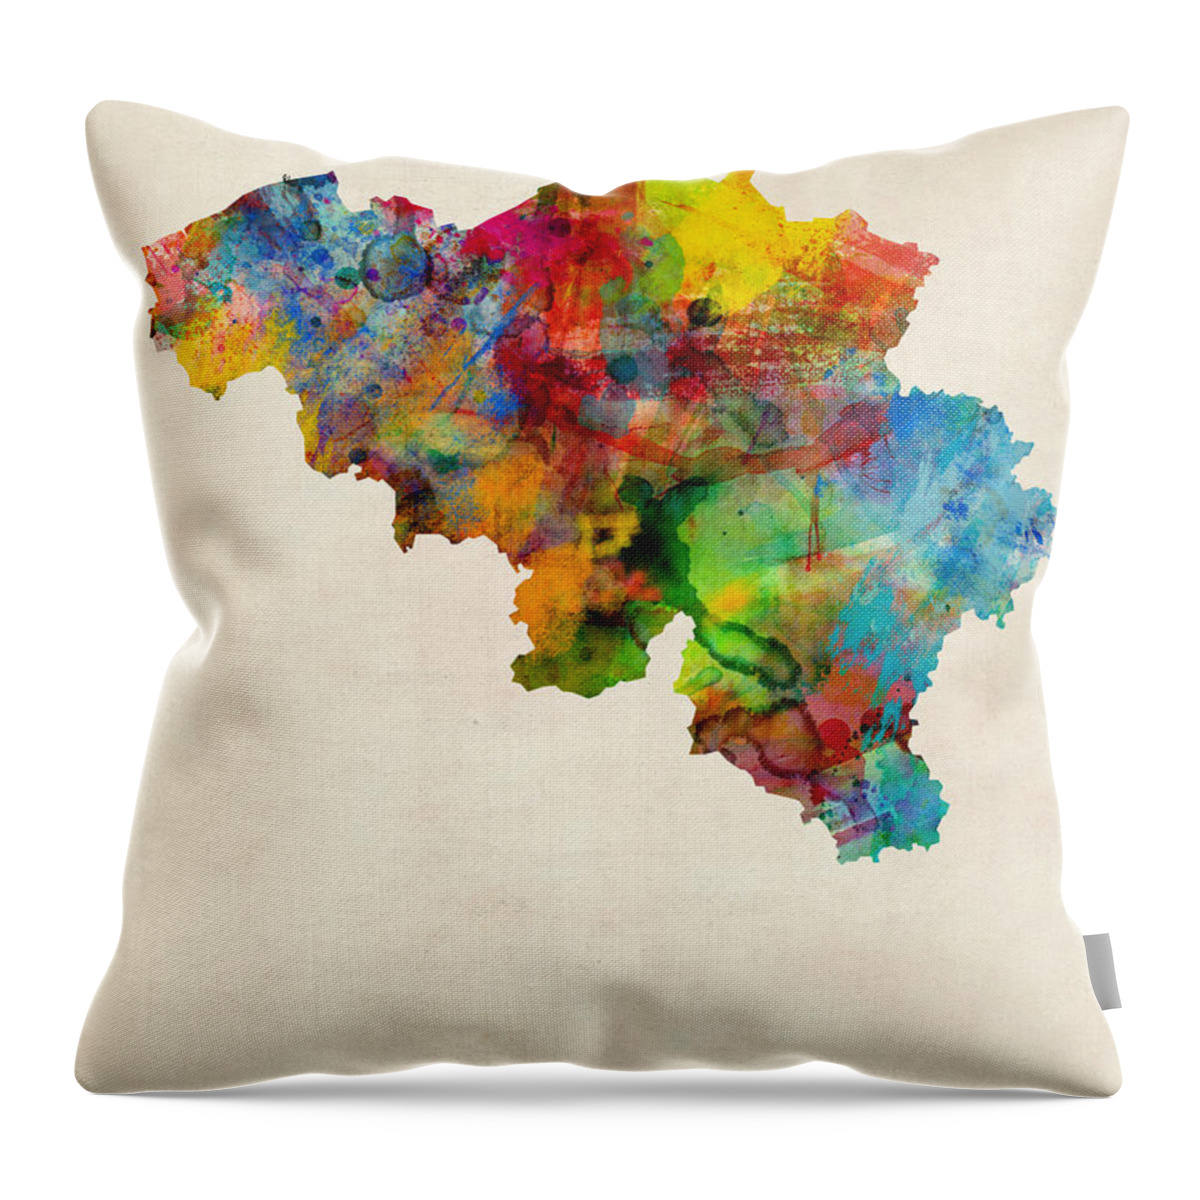 Map Art Throw Pillow featuring the digital art Belgium Watercolor Map by Michael Tompsett